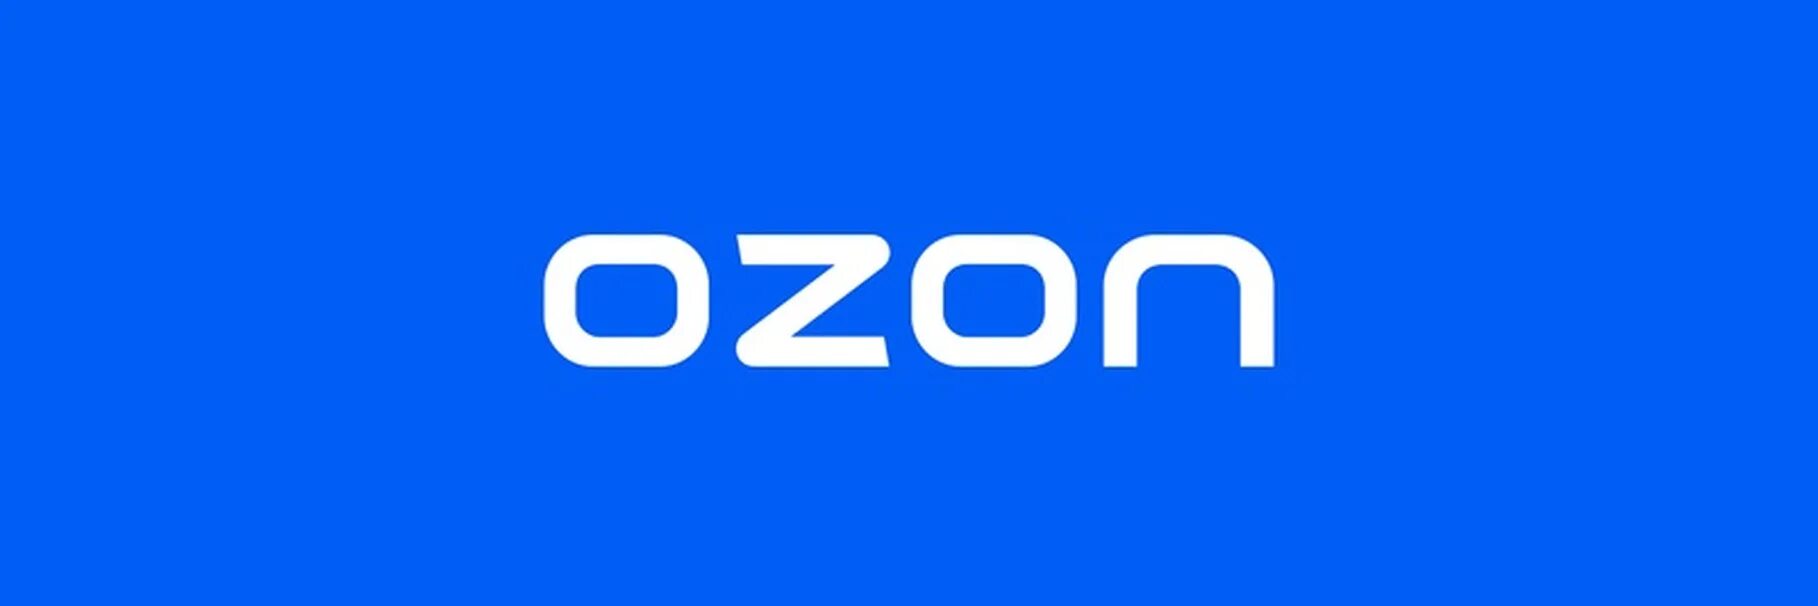 Озон болотное. Озон логотип. Надпись Озон. Магазин Озон логотип. Логотип Озон квадратный.